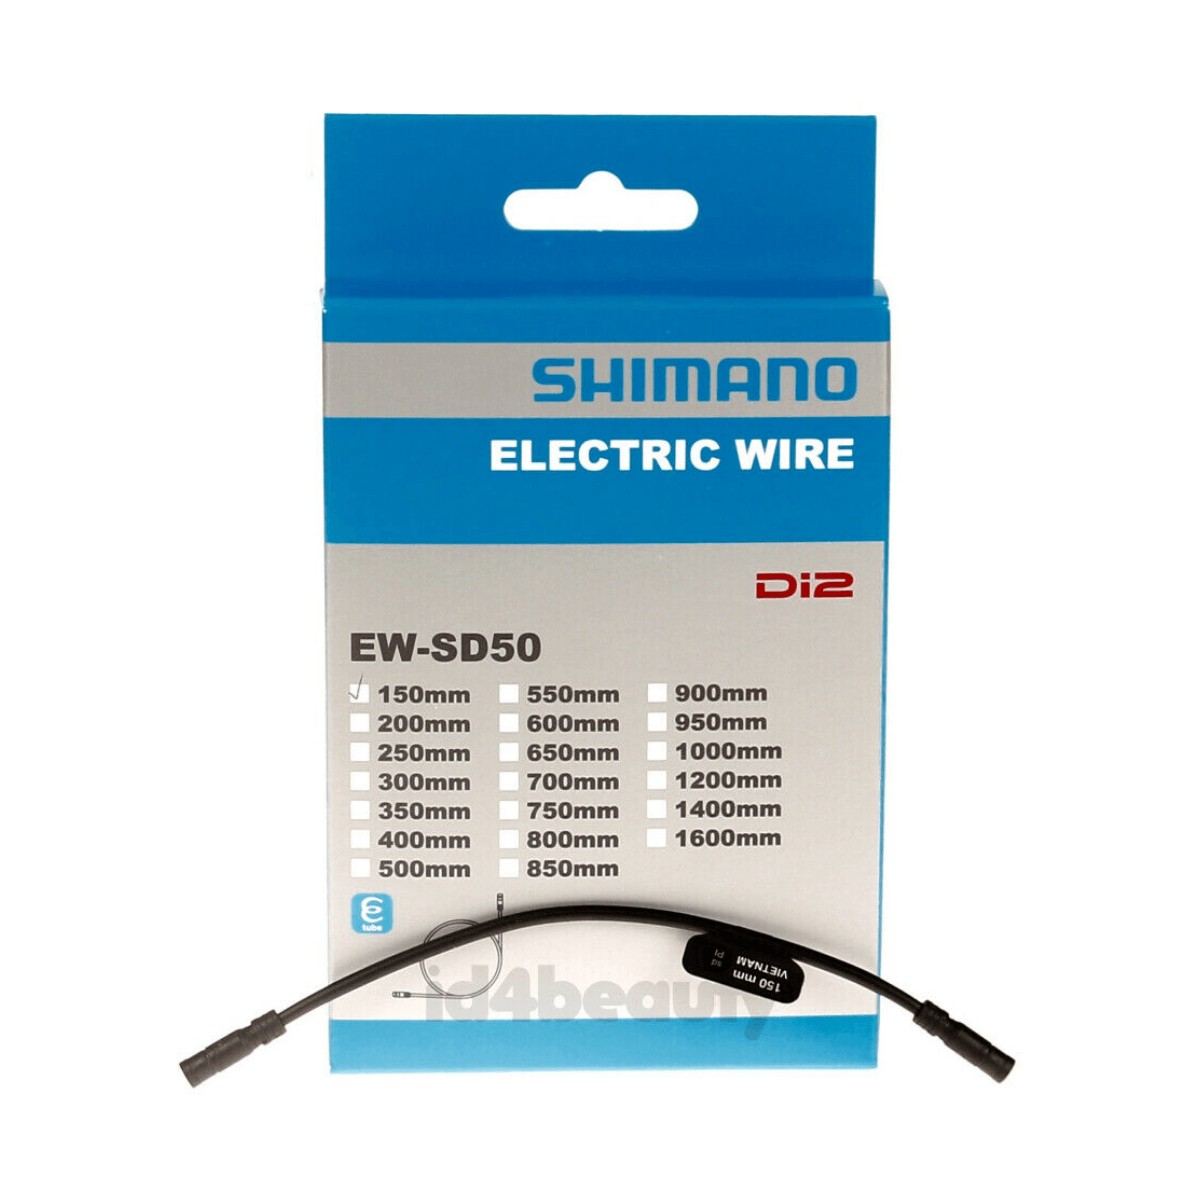 Shimano DI2 EW-SD50 150mm Cable